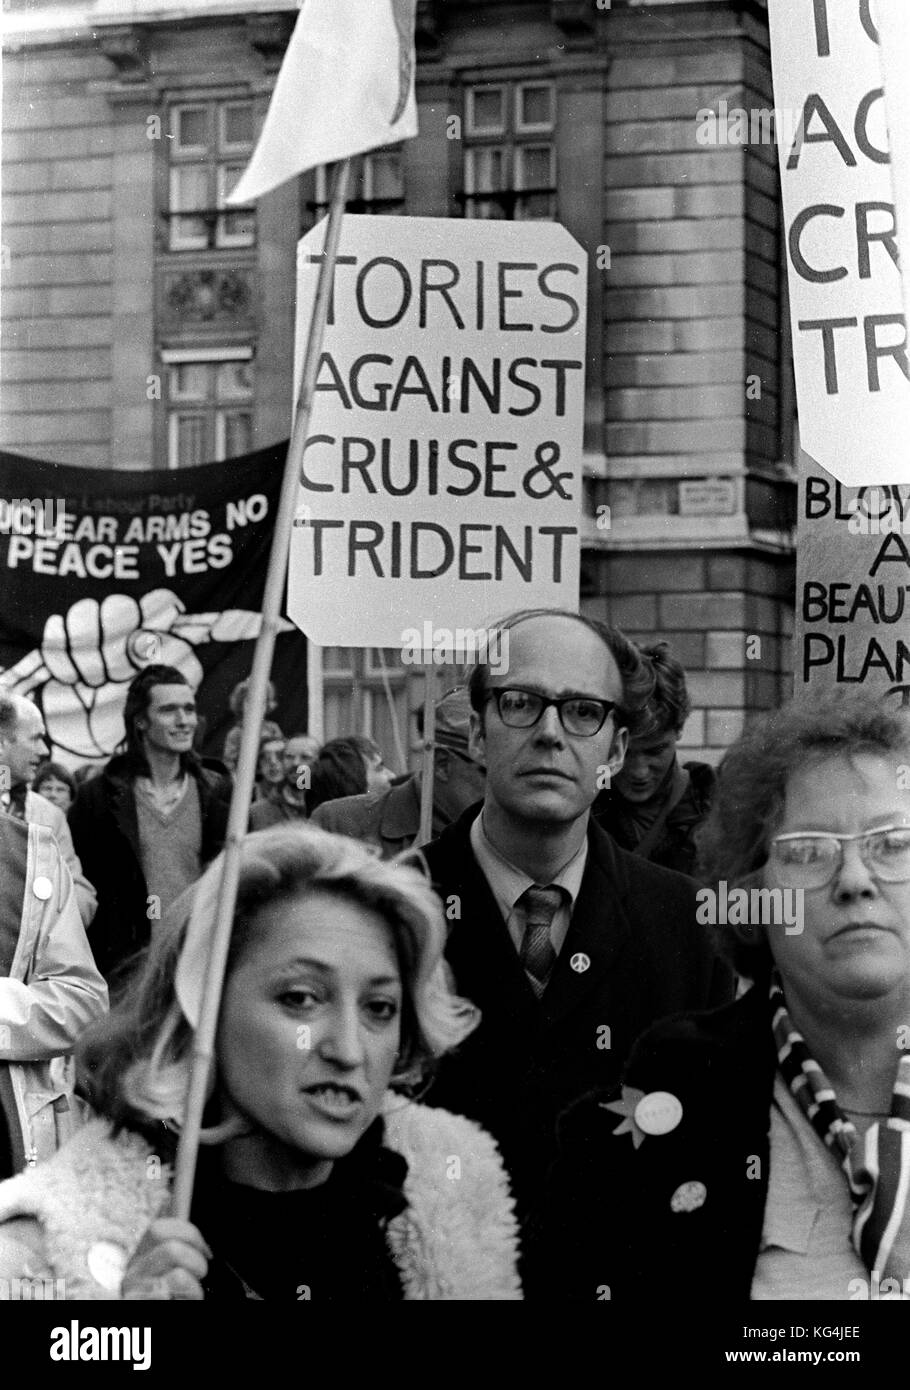 Tories gegen Cruise & Trident marschieren an der CND-Protest gegen Cruise & Trident Raketen durch cenral London im Oktober 1984 Stockfoto